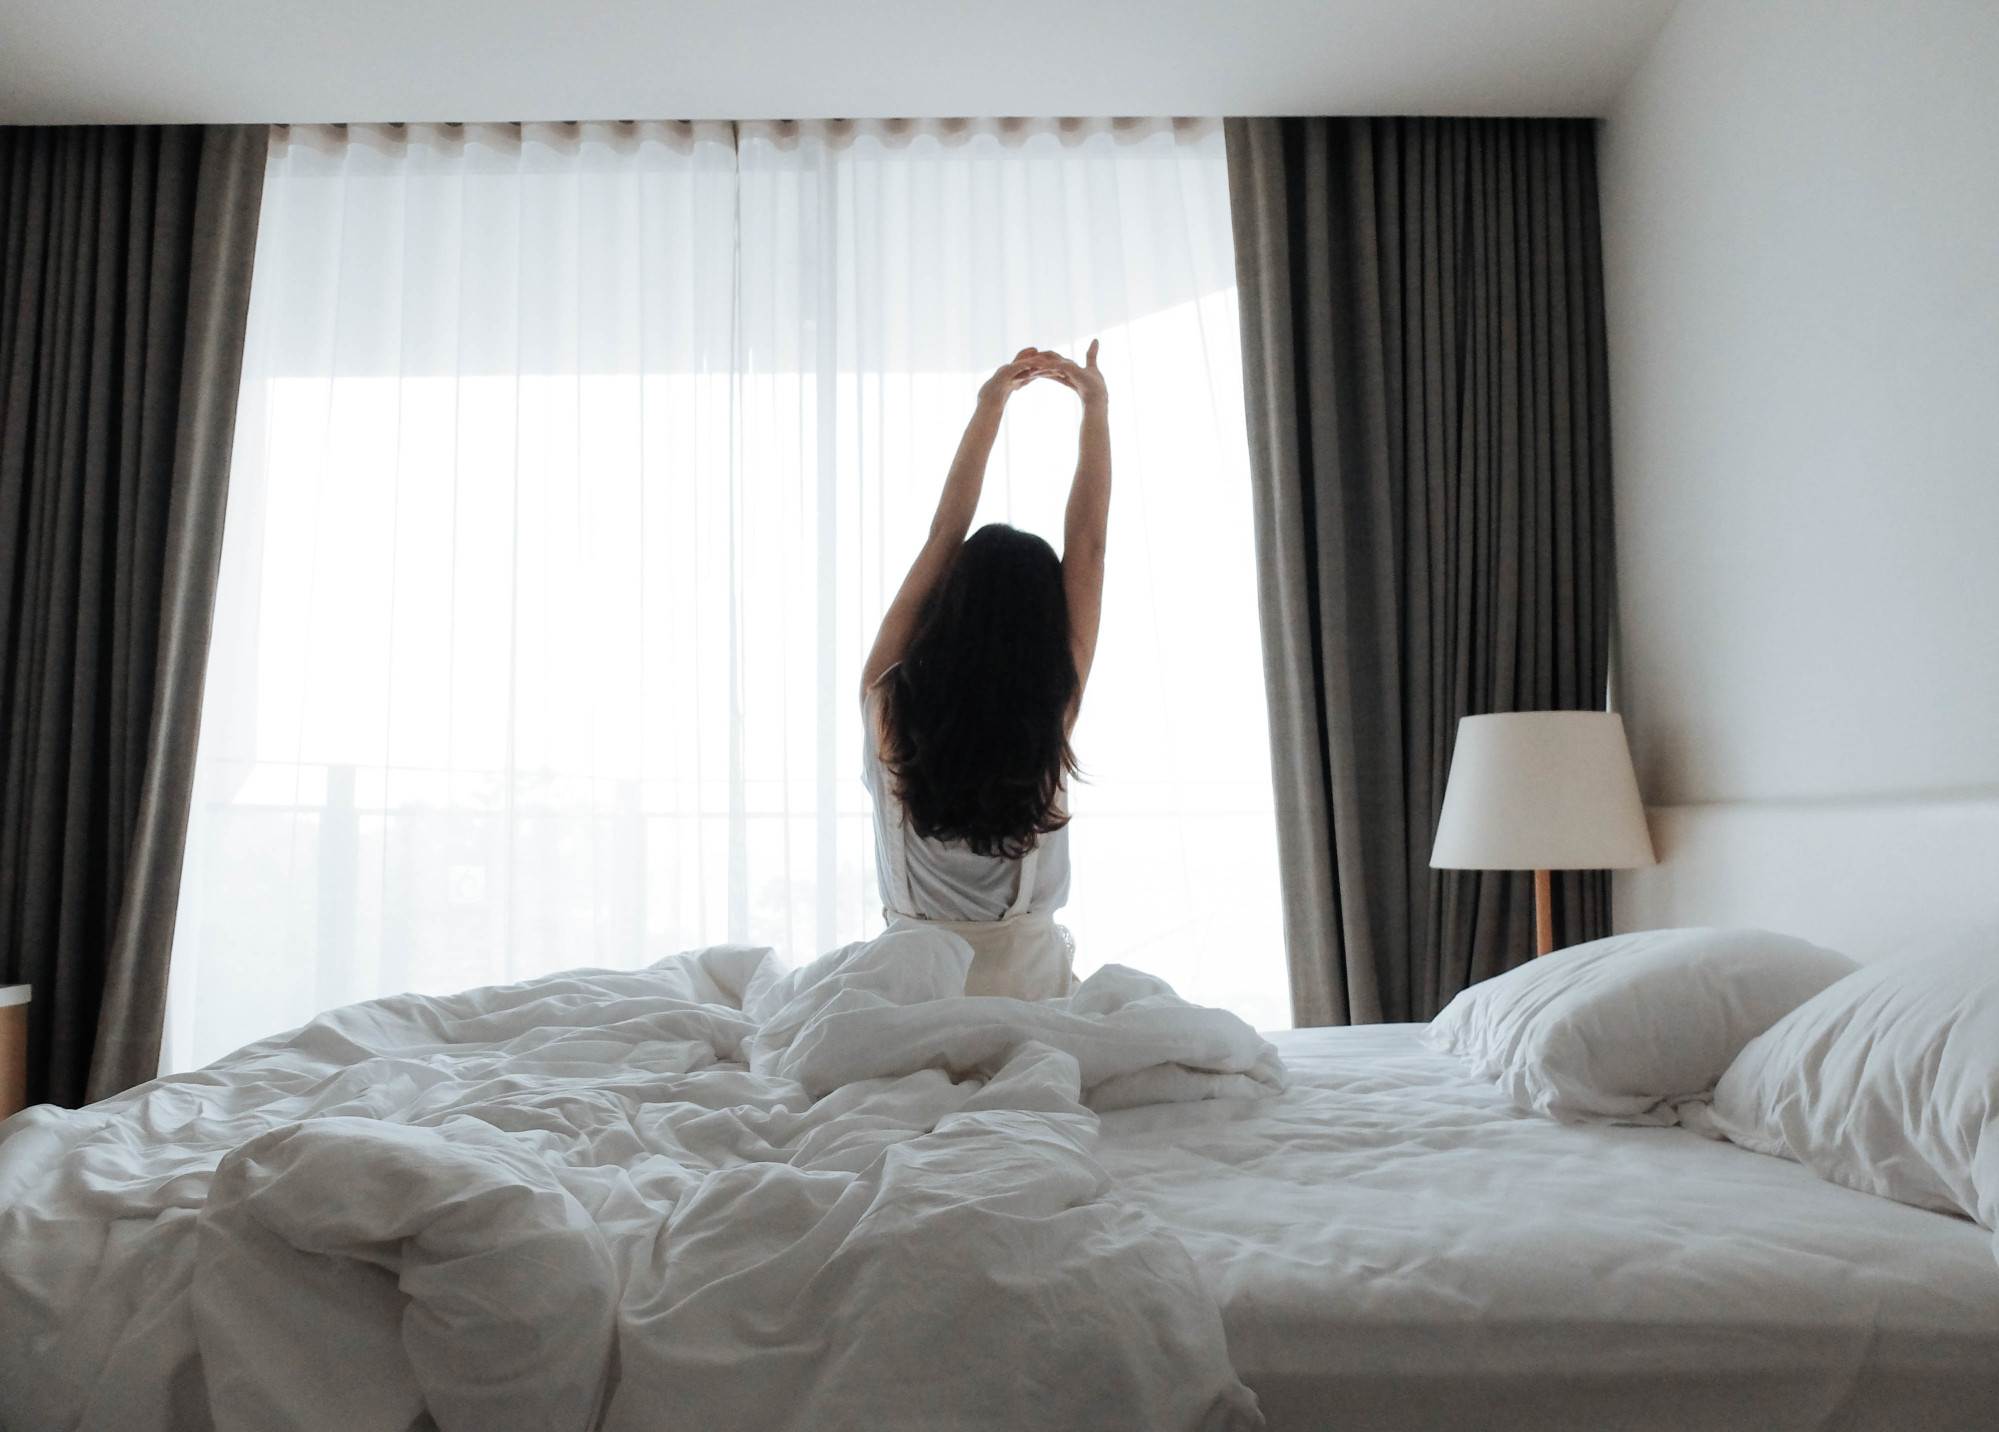 Erholsamer Schlaf ist mit entscheidend für das Wohlbefinden. Foto: duangbj via Twenty20